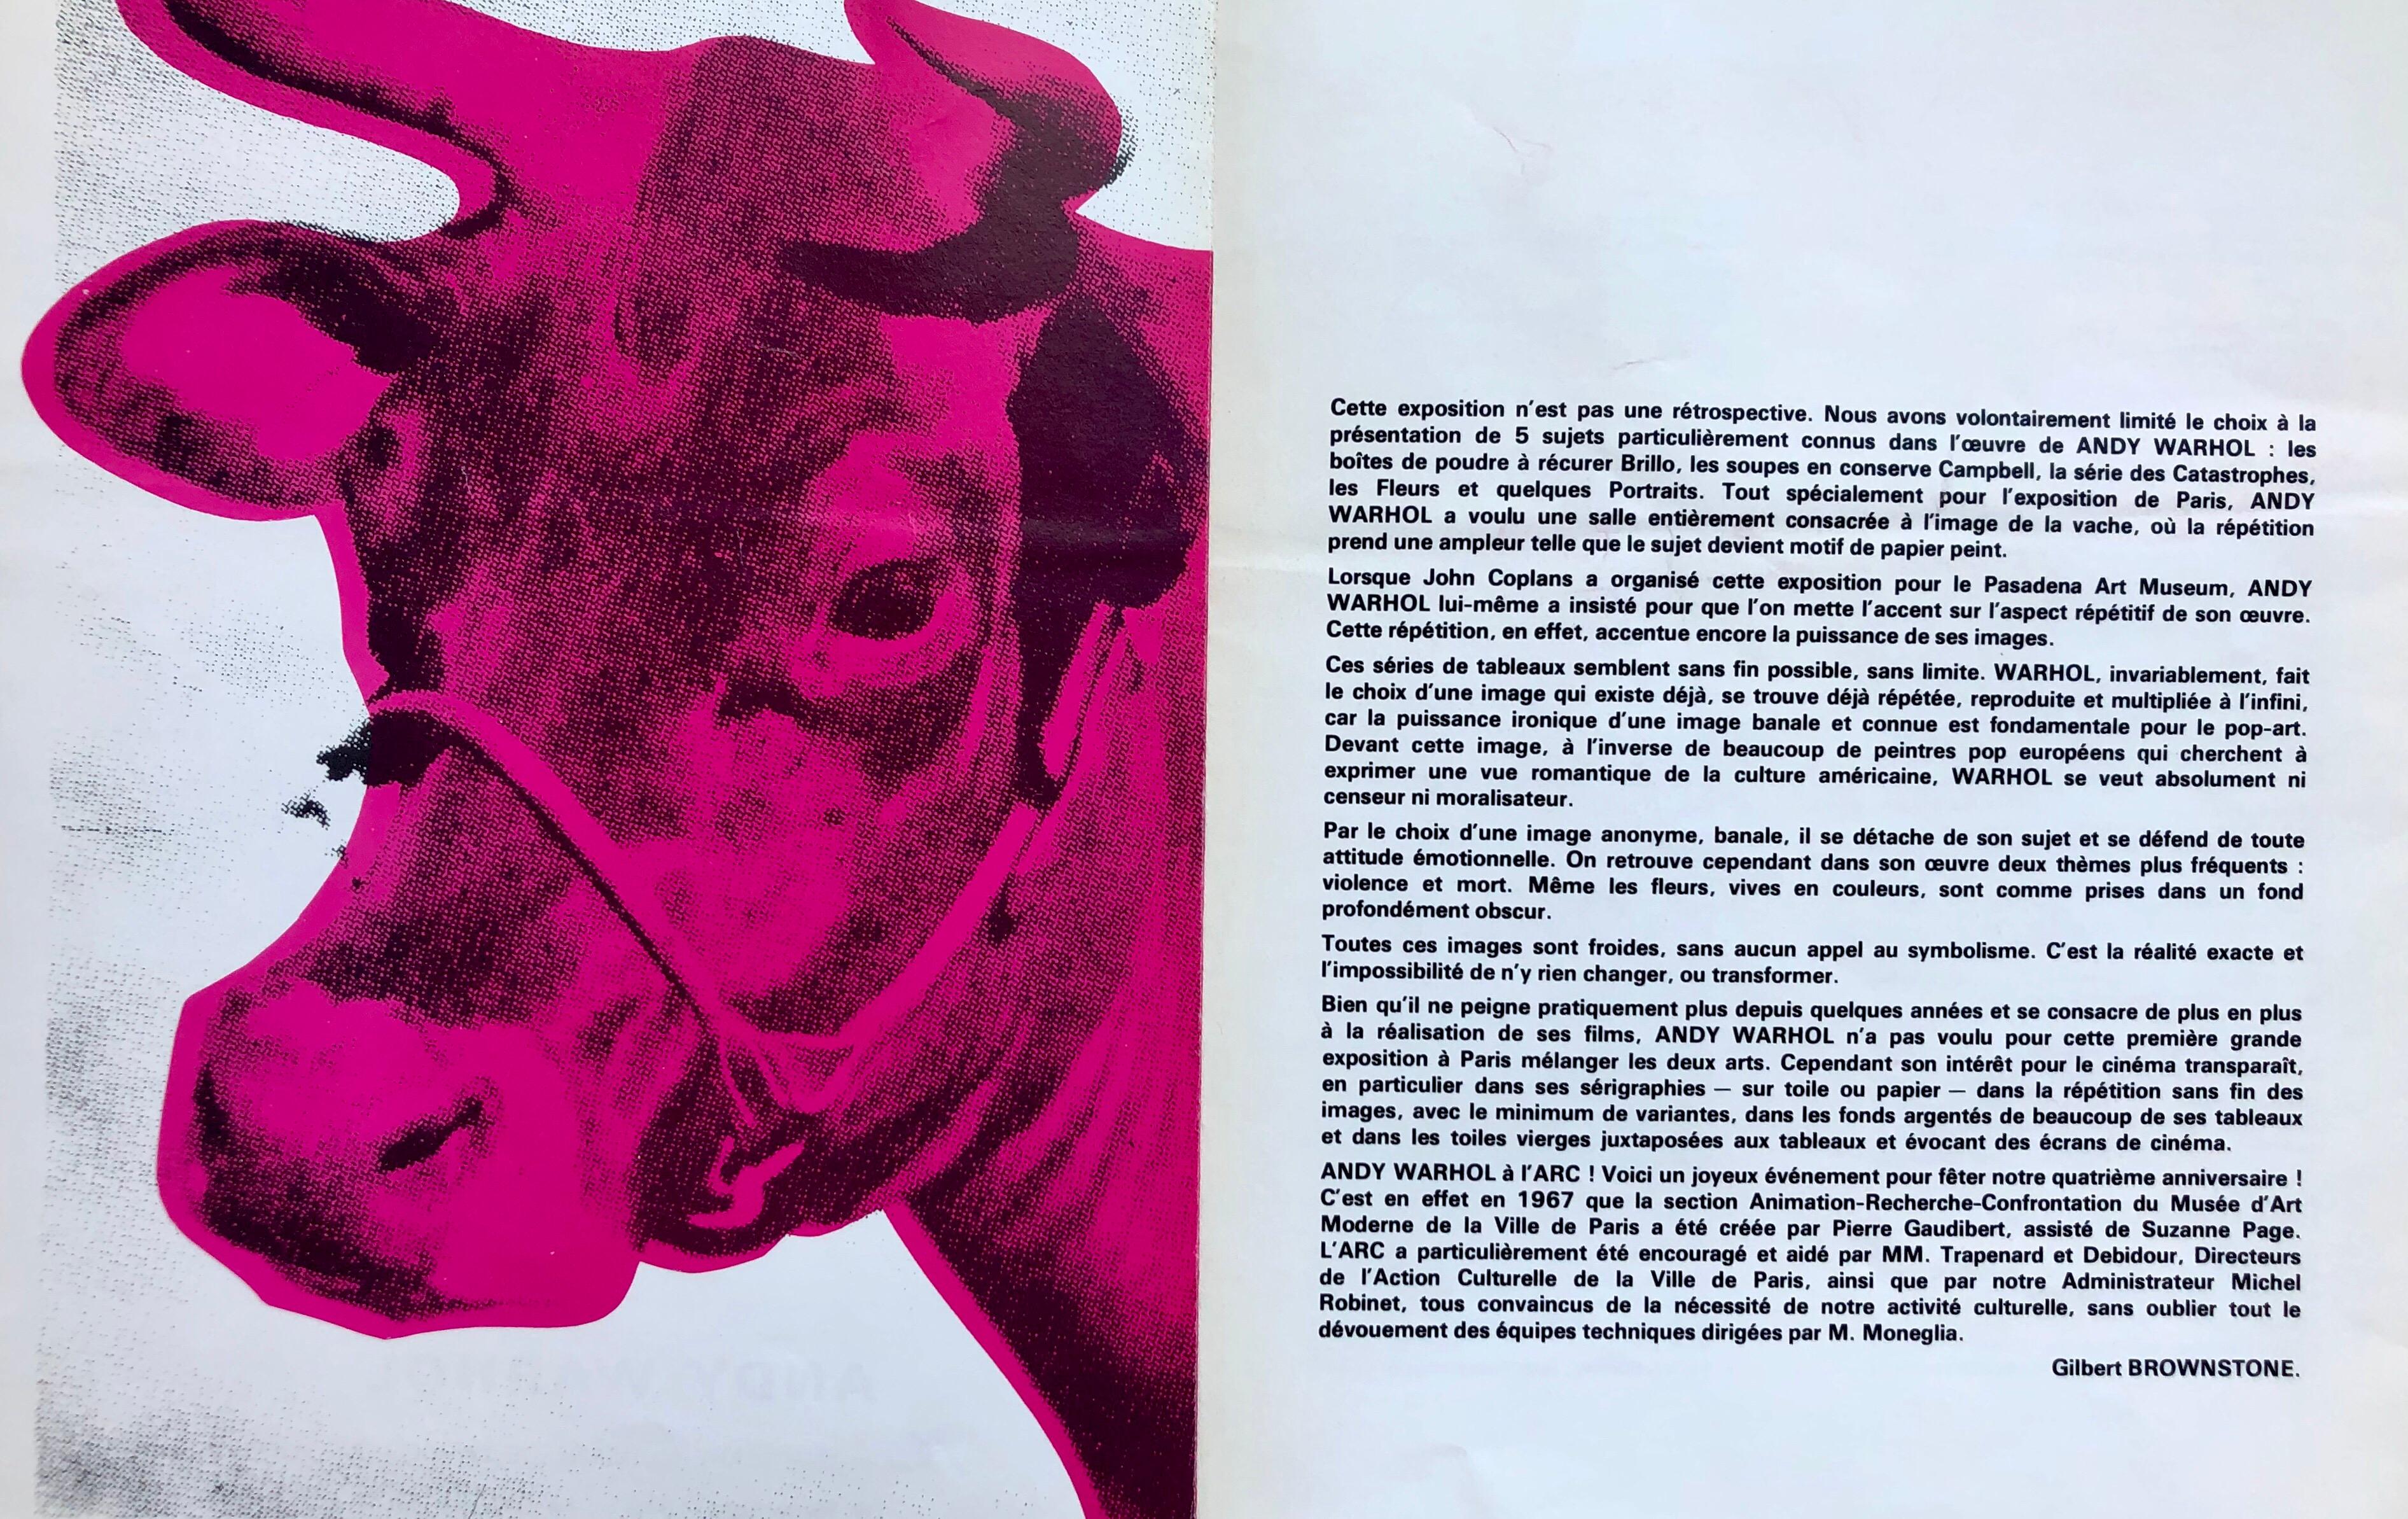 Andy Warhol Paris, Musée d'Art Moderne de la Ville de Paris, 1970 :
Rare catalogue d'exposition original de Warhol présentant une couverture de Pink Cow illustrée par Warhol. 

Publié à l'occasion de l'exposition personnelle de Warhol au MAM, Paris,